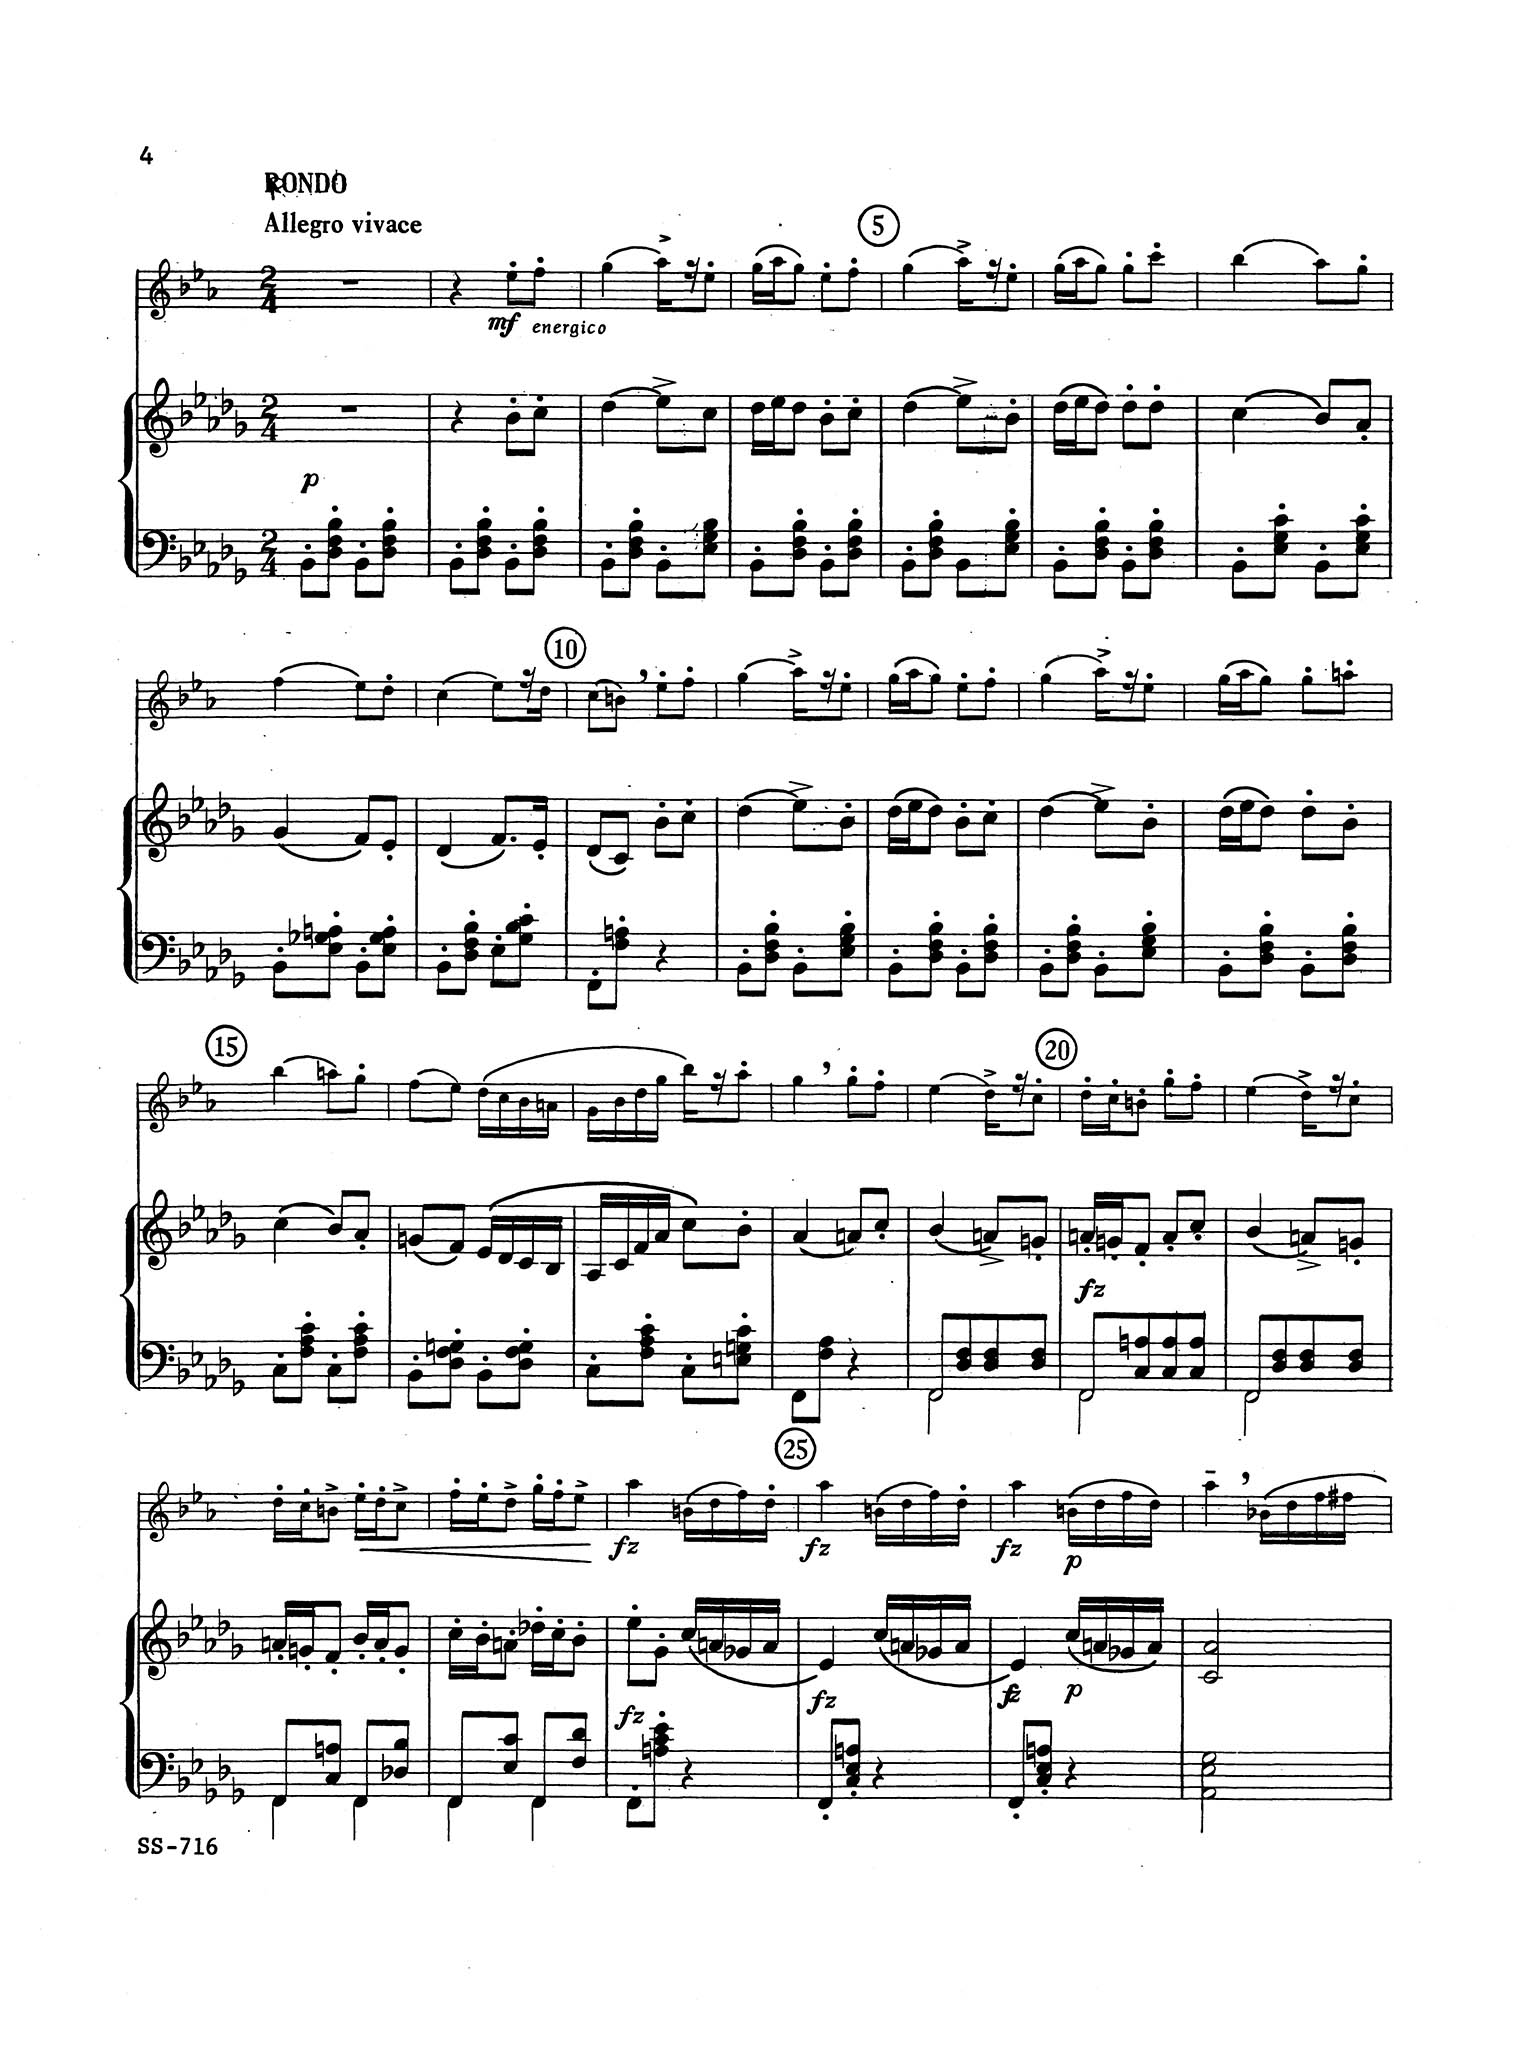 Clarinet Method, Op. 63, Div. II: No. 50 Score